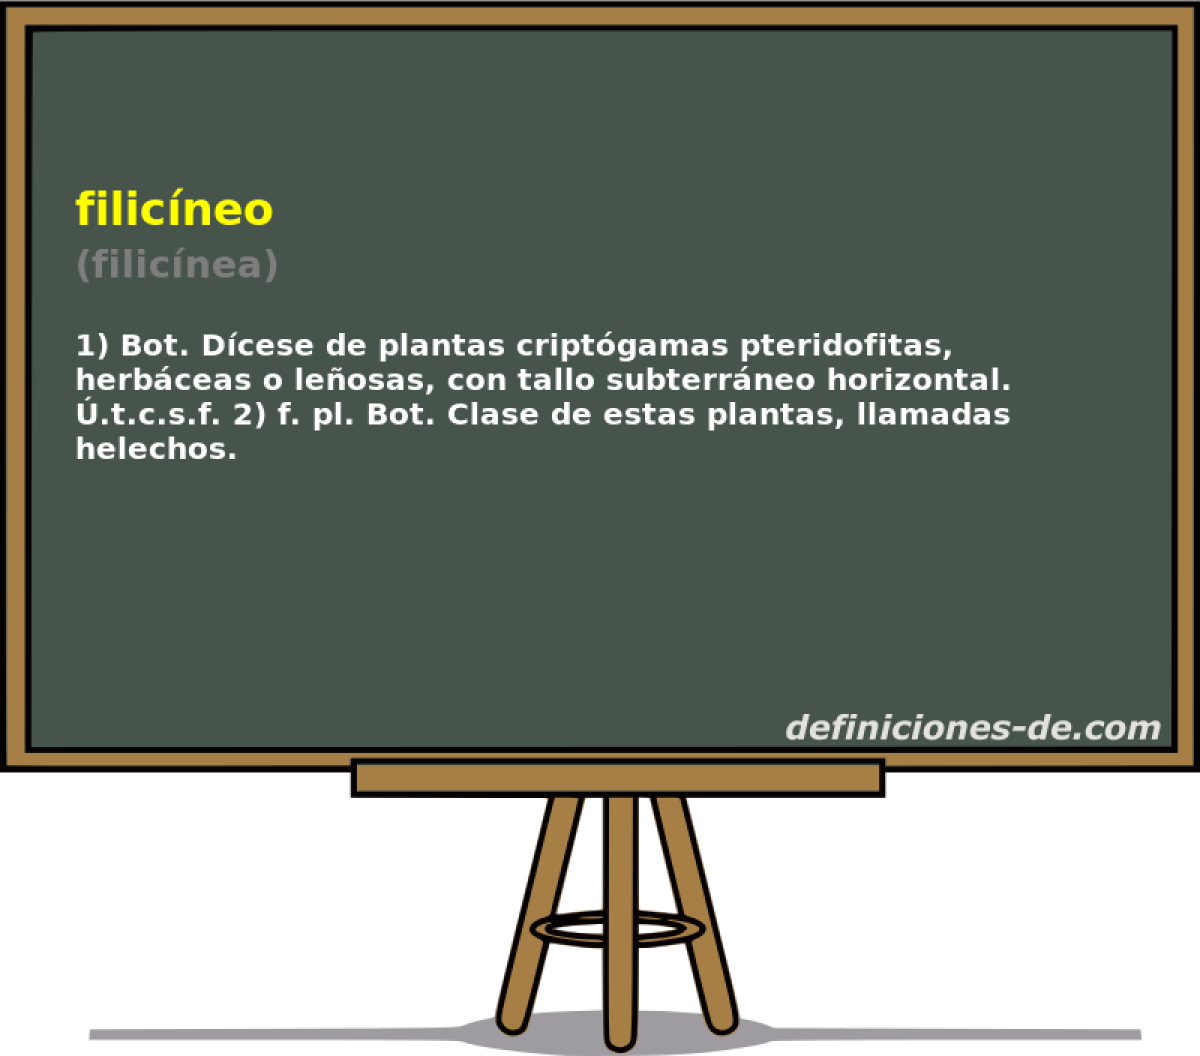 filicneo (filicnea)